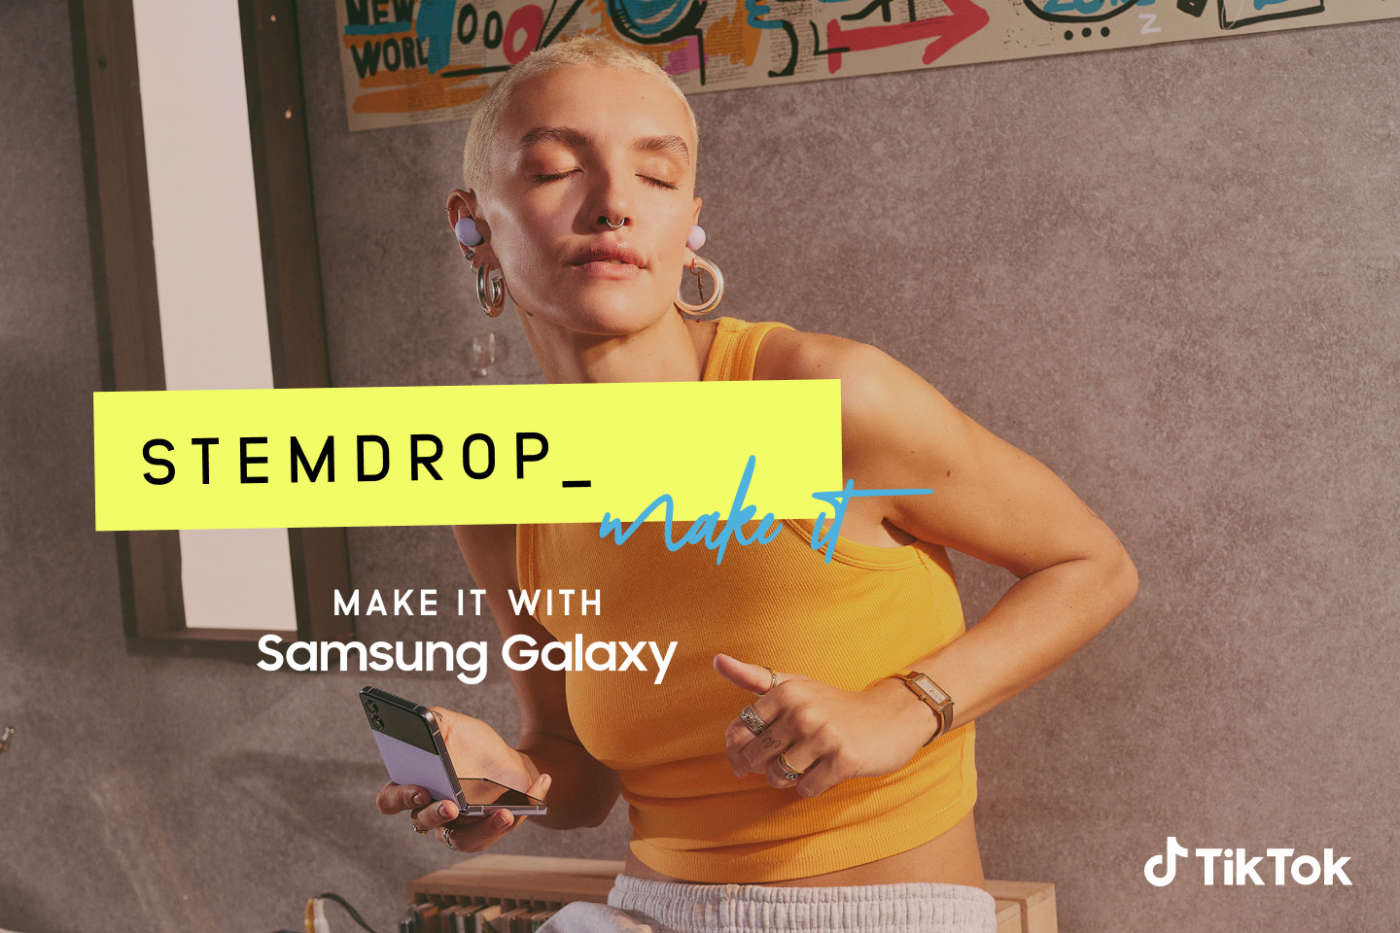 Samsung TikTok StemDrop